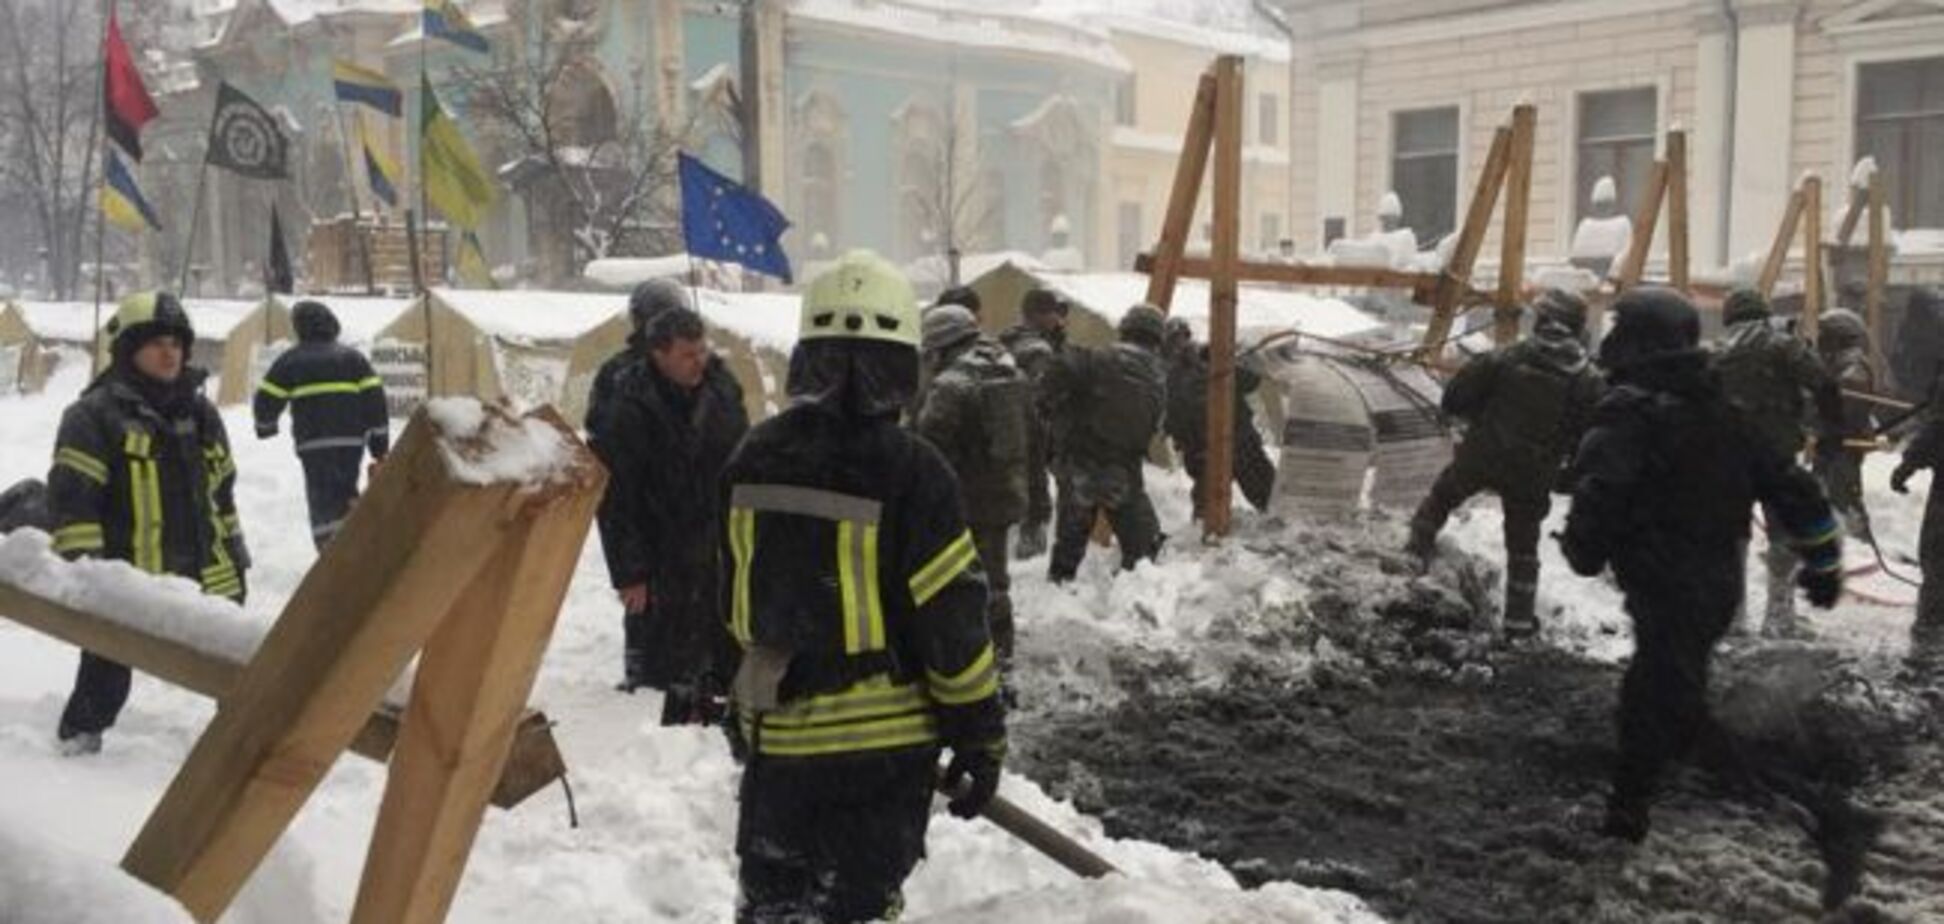 'Київ очистили від гнидника': в мережі викликало ажіотаж знесення наметів під Радою